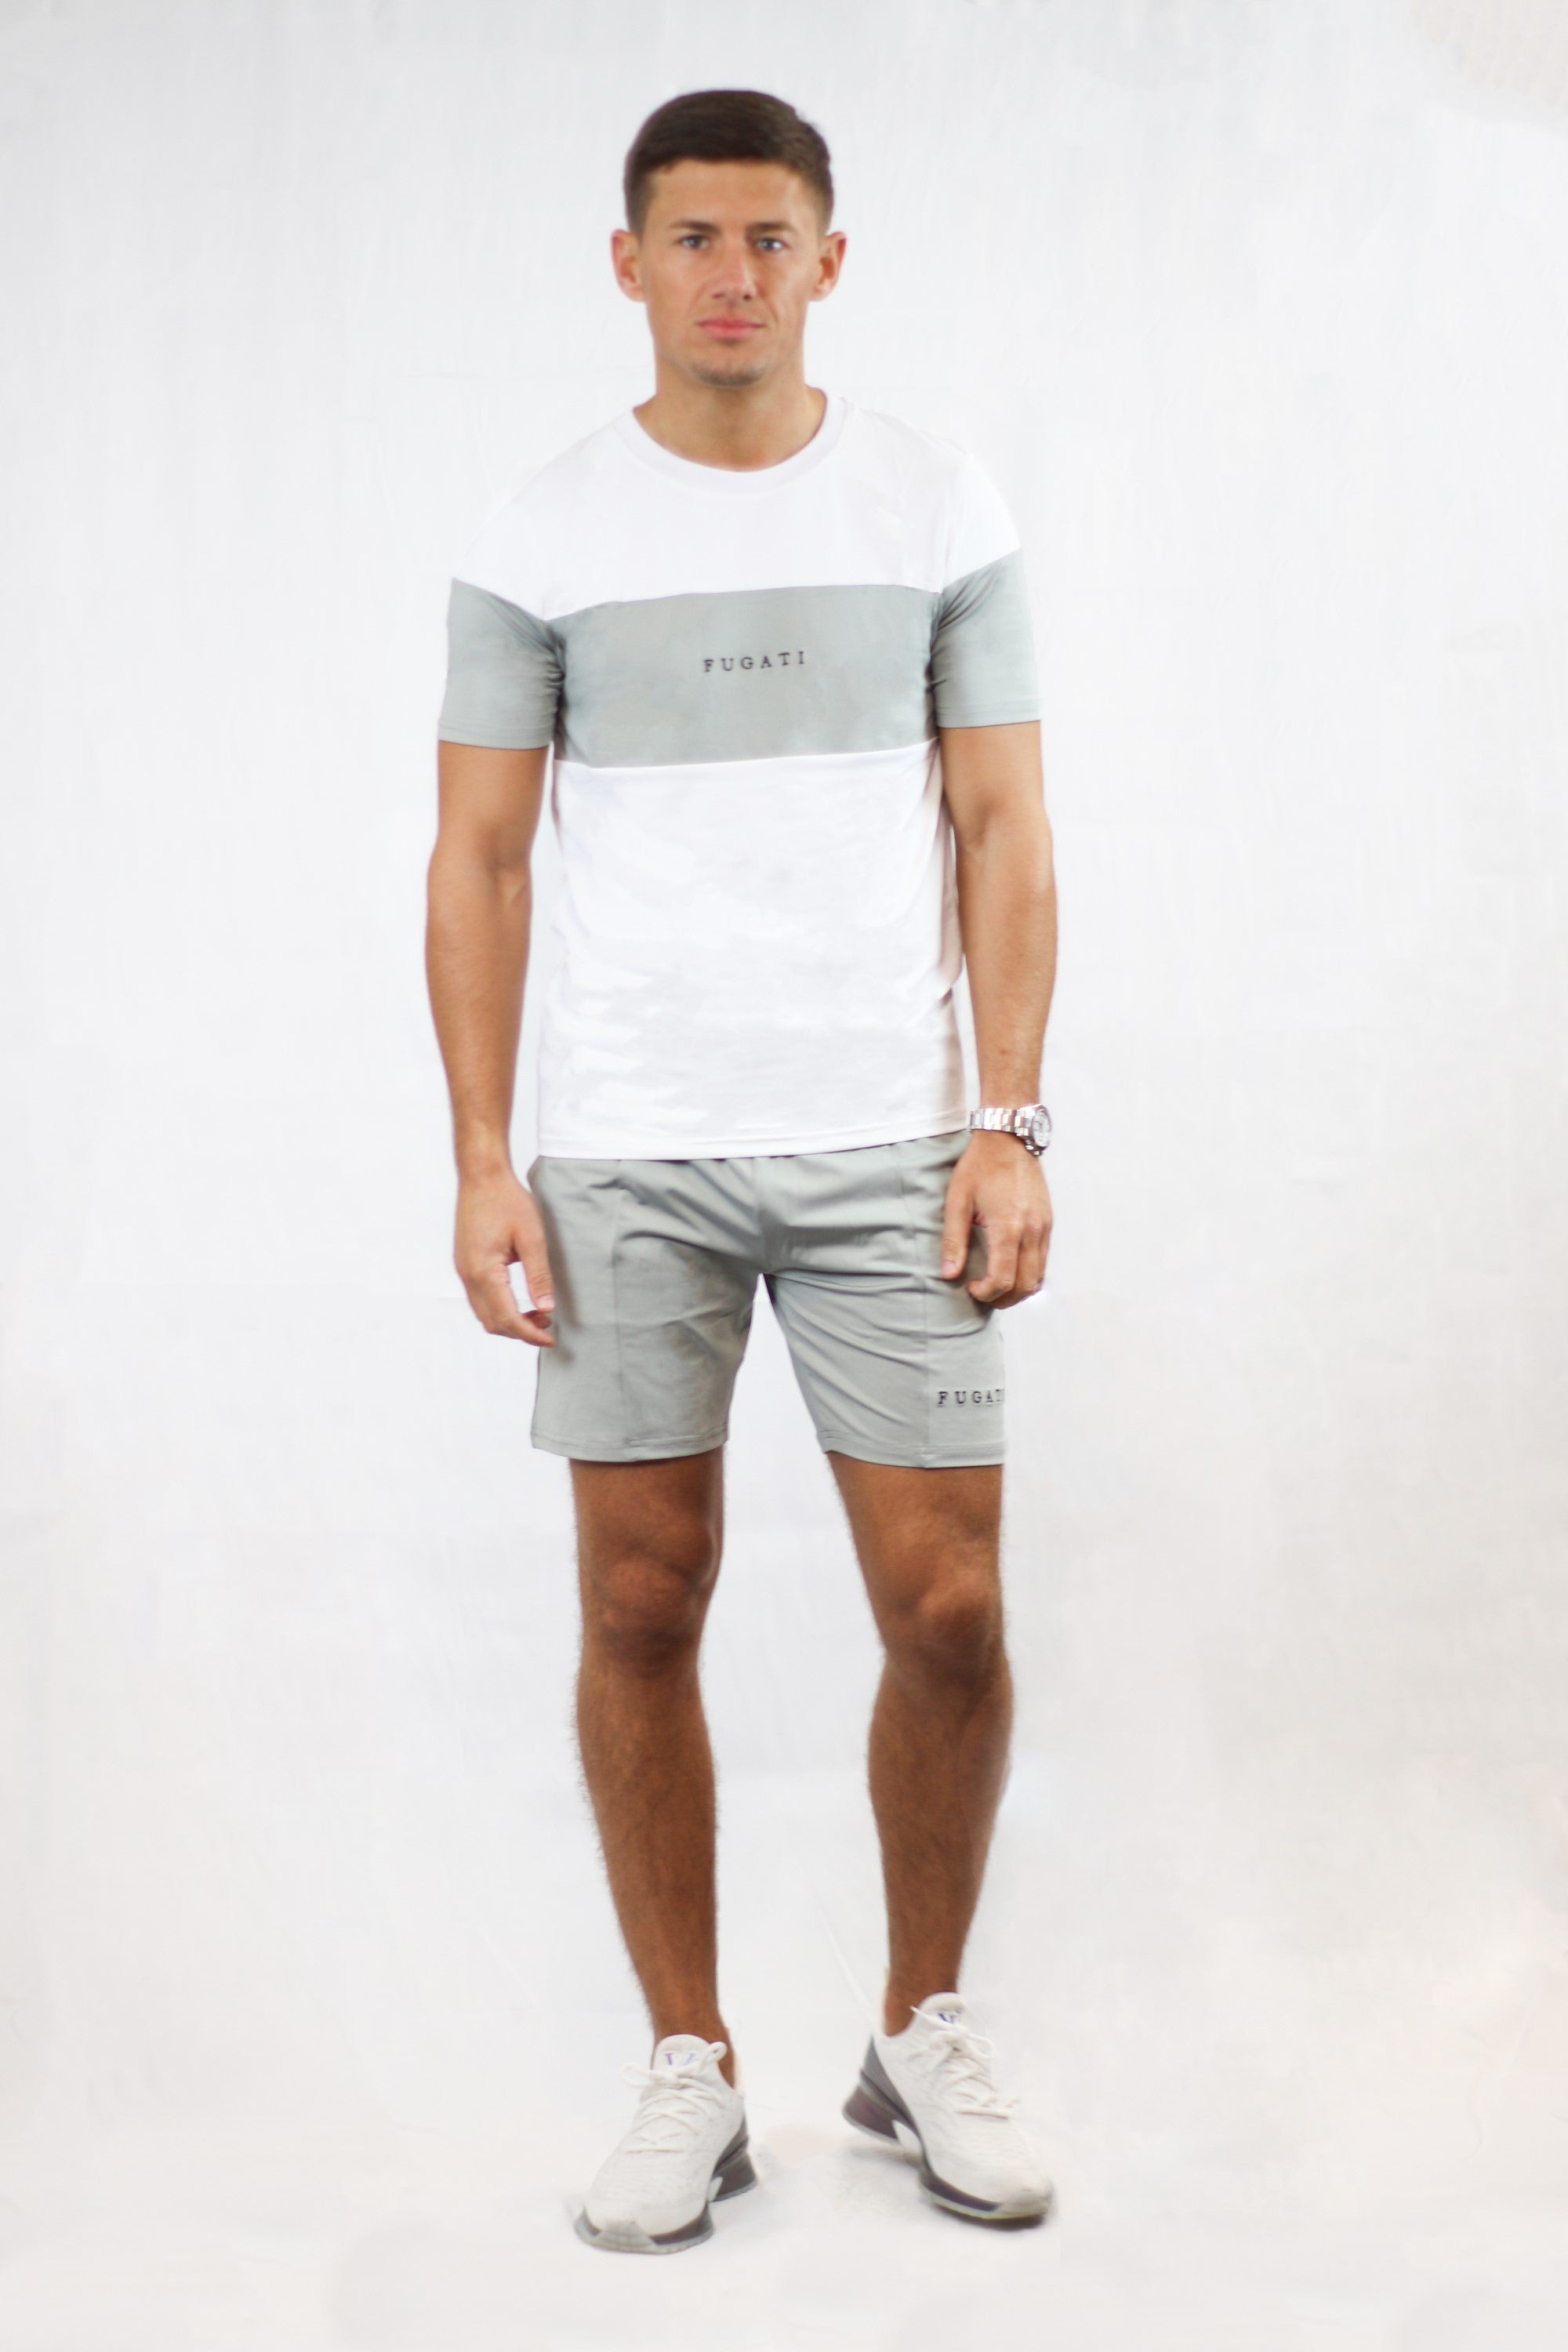 Fugati Shorts - Grey